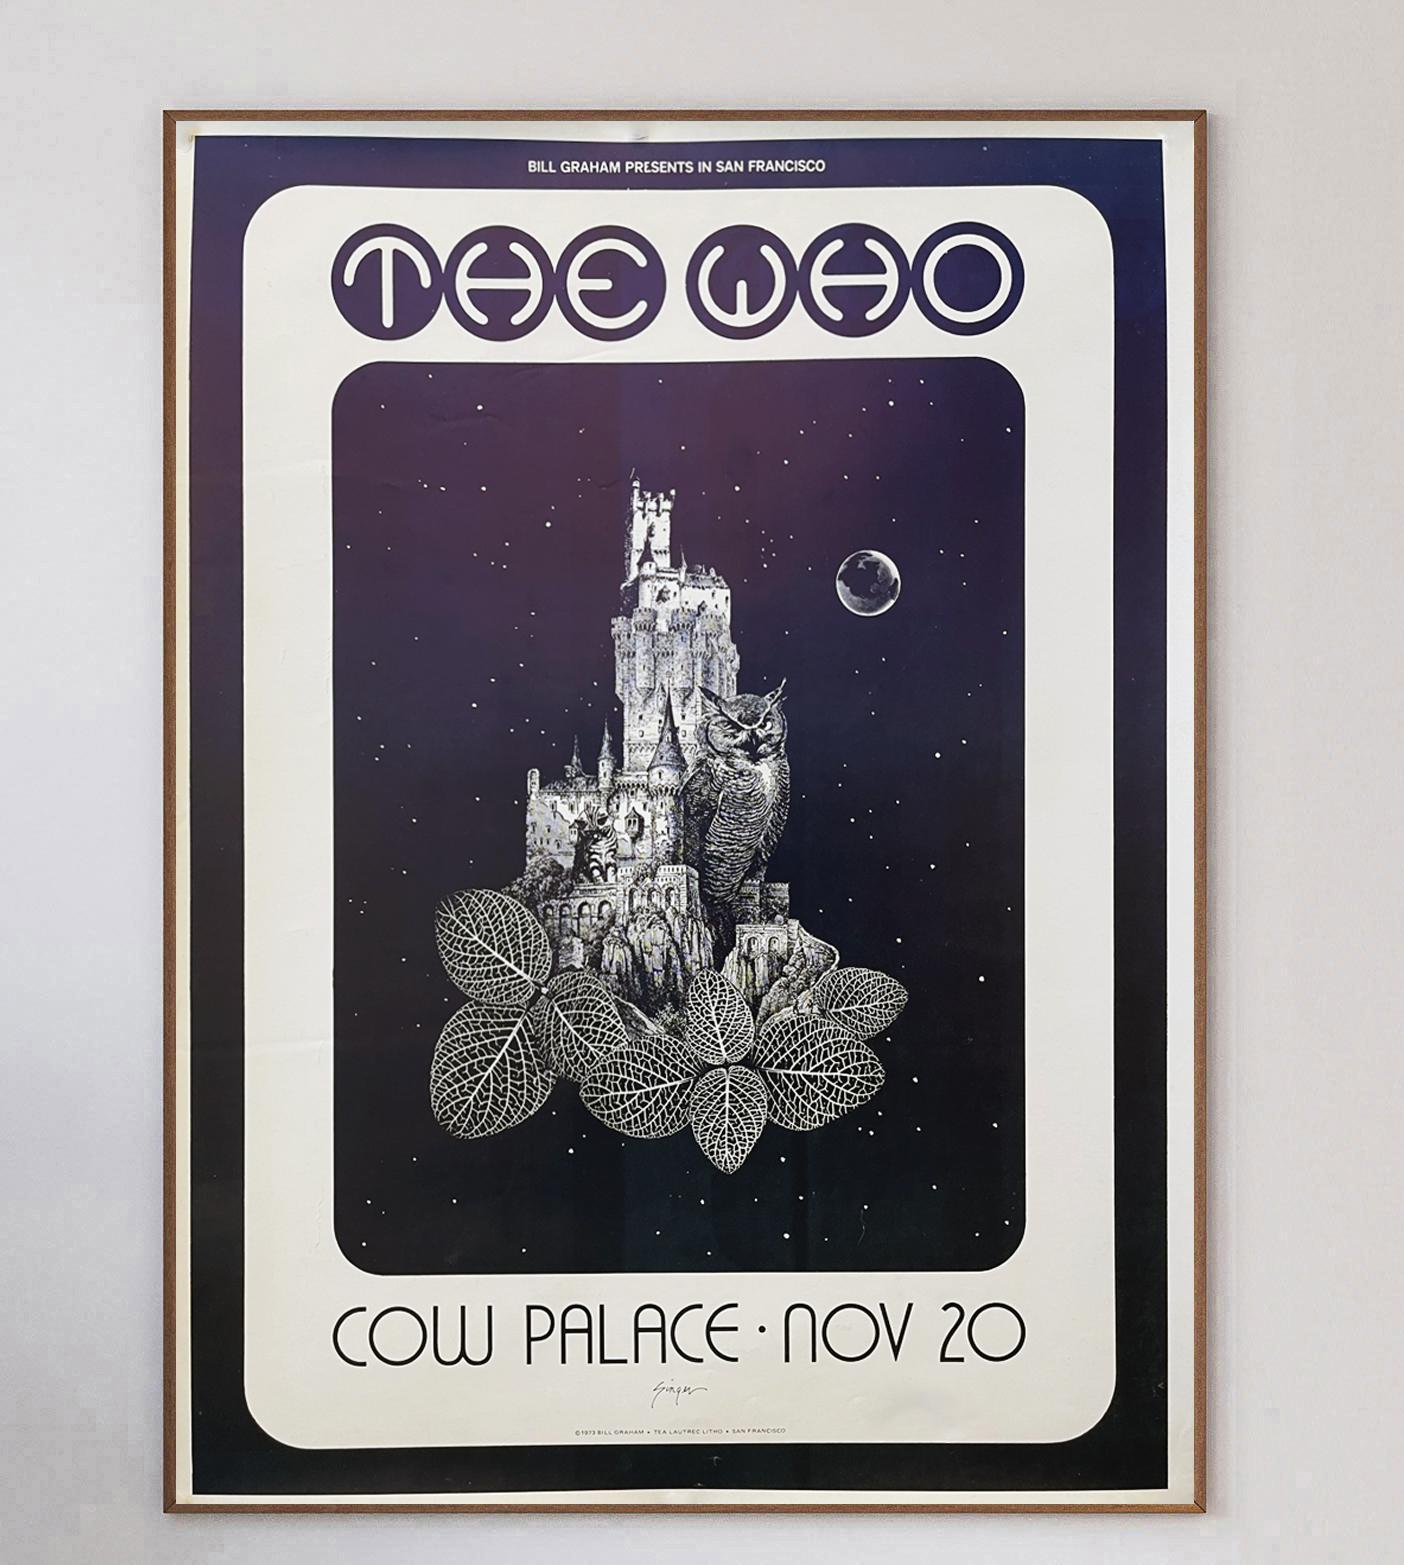 Fantastique affiche promouvant le concert de The Who au Cow Palace en Californie, USA. Présenté par Bill Graham, le concert a eu lieu le 20 novembre et constituait la première étape de leur tournée 